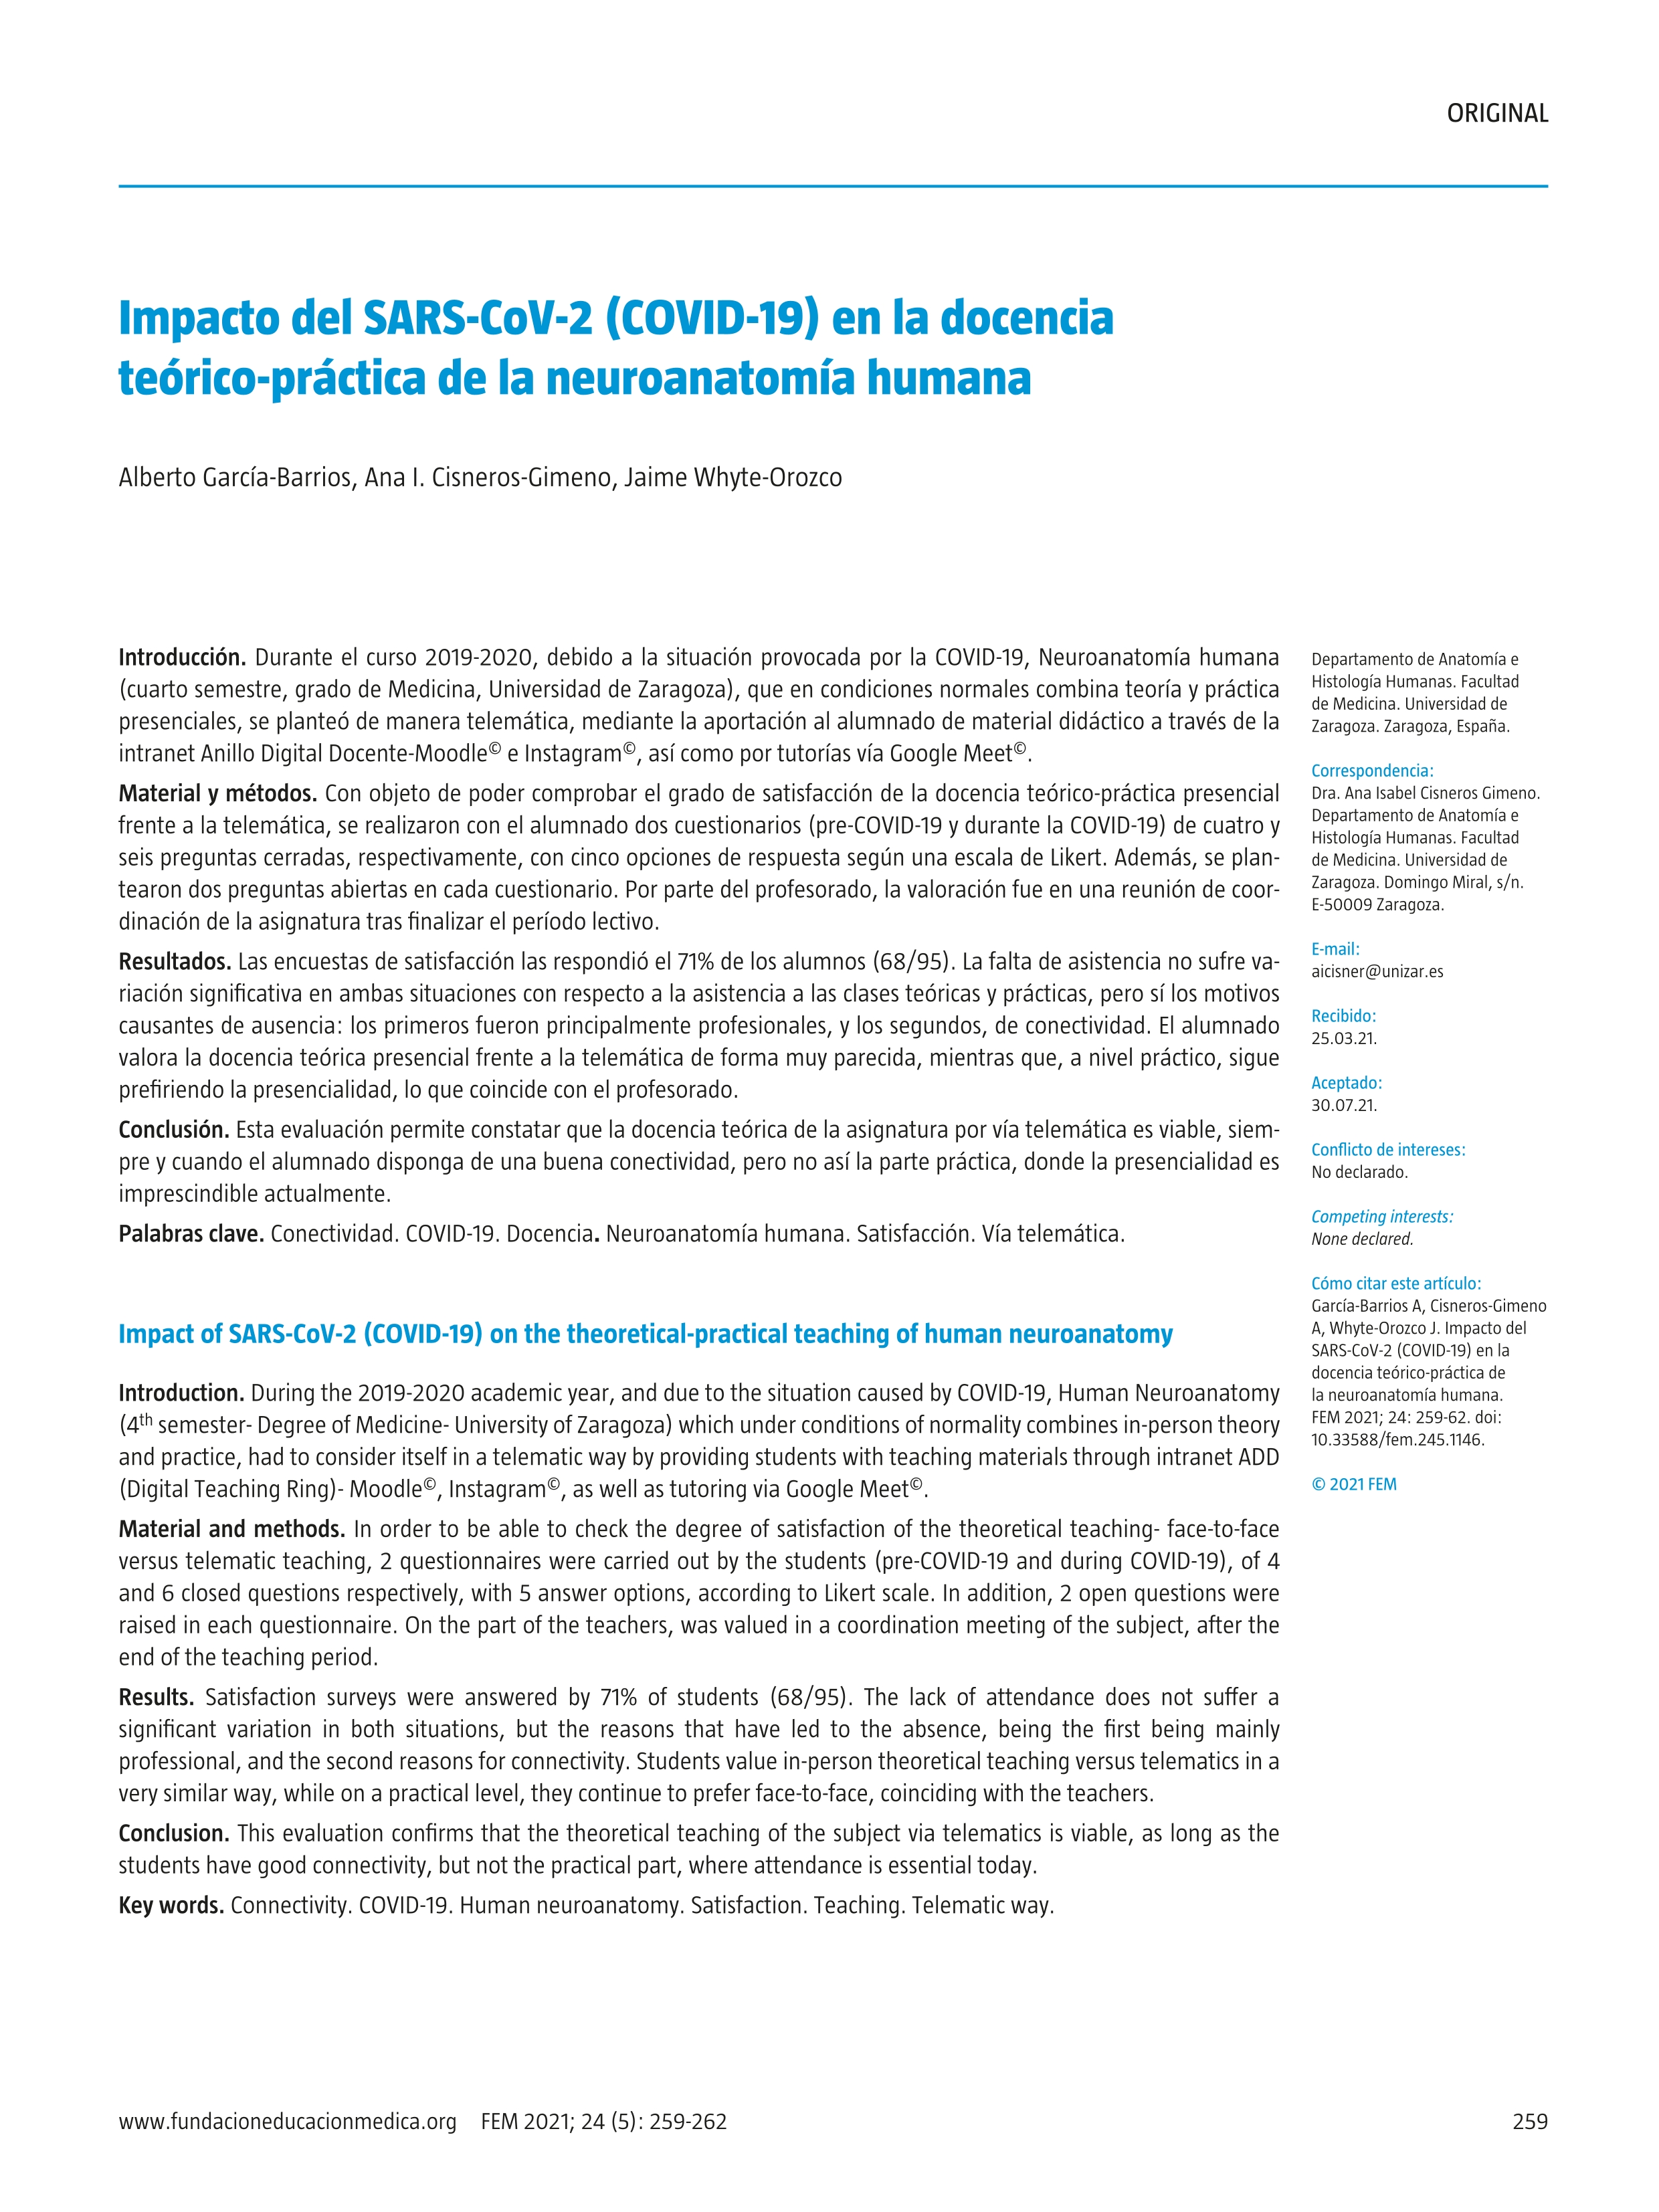 Impacto del SARS-CoV-2 (COVID-19) en la docencia teórico-práctica de la neuroanatomía humana